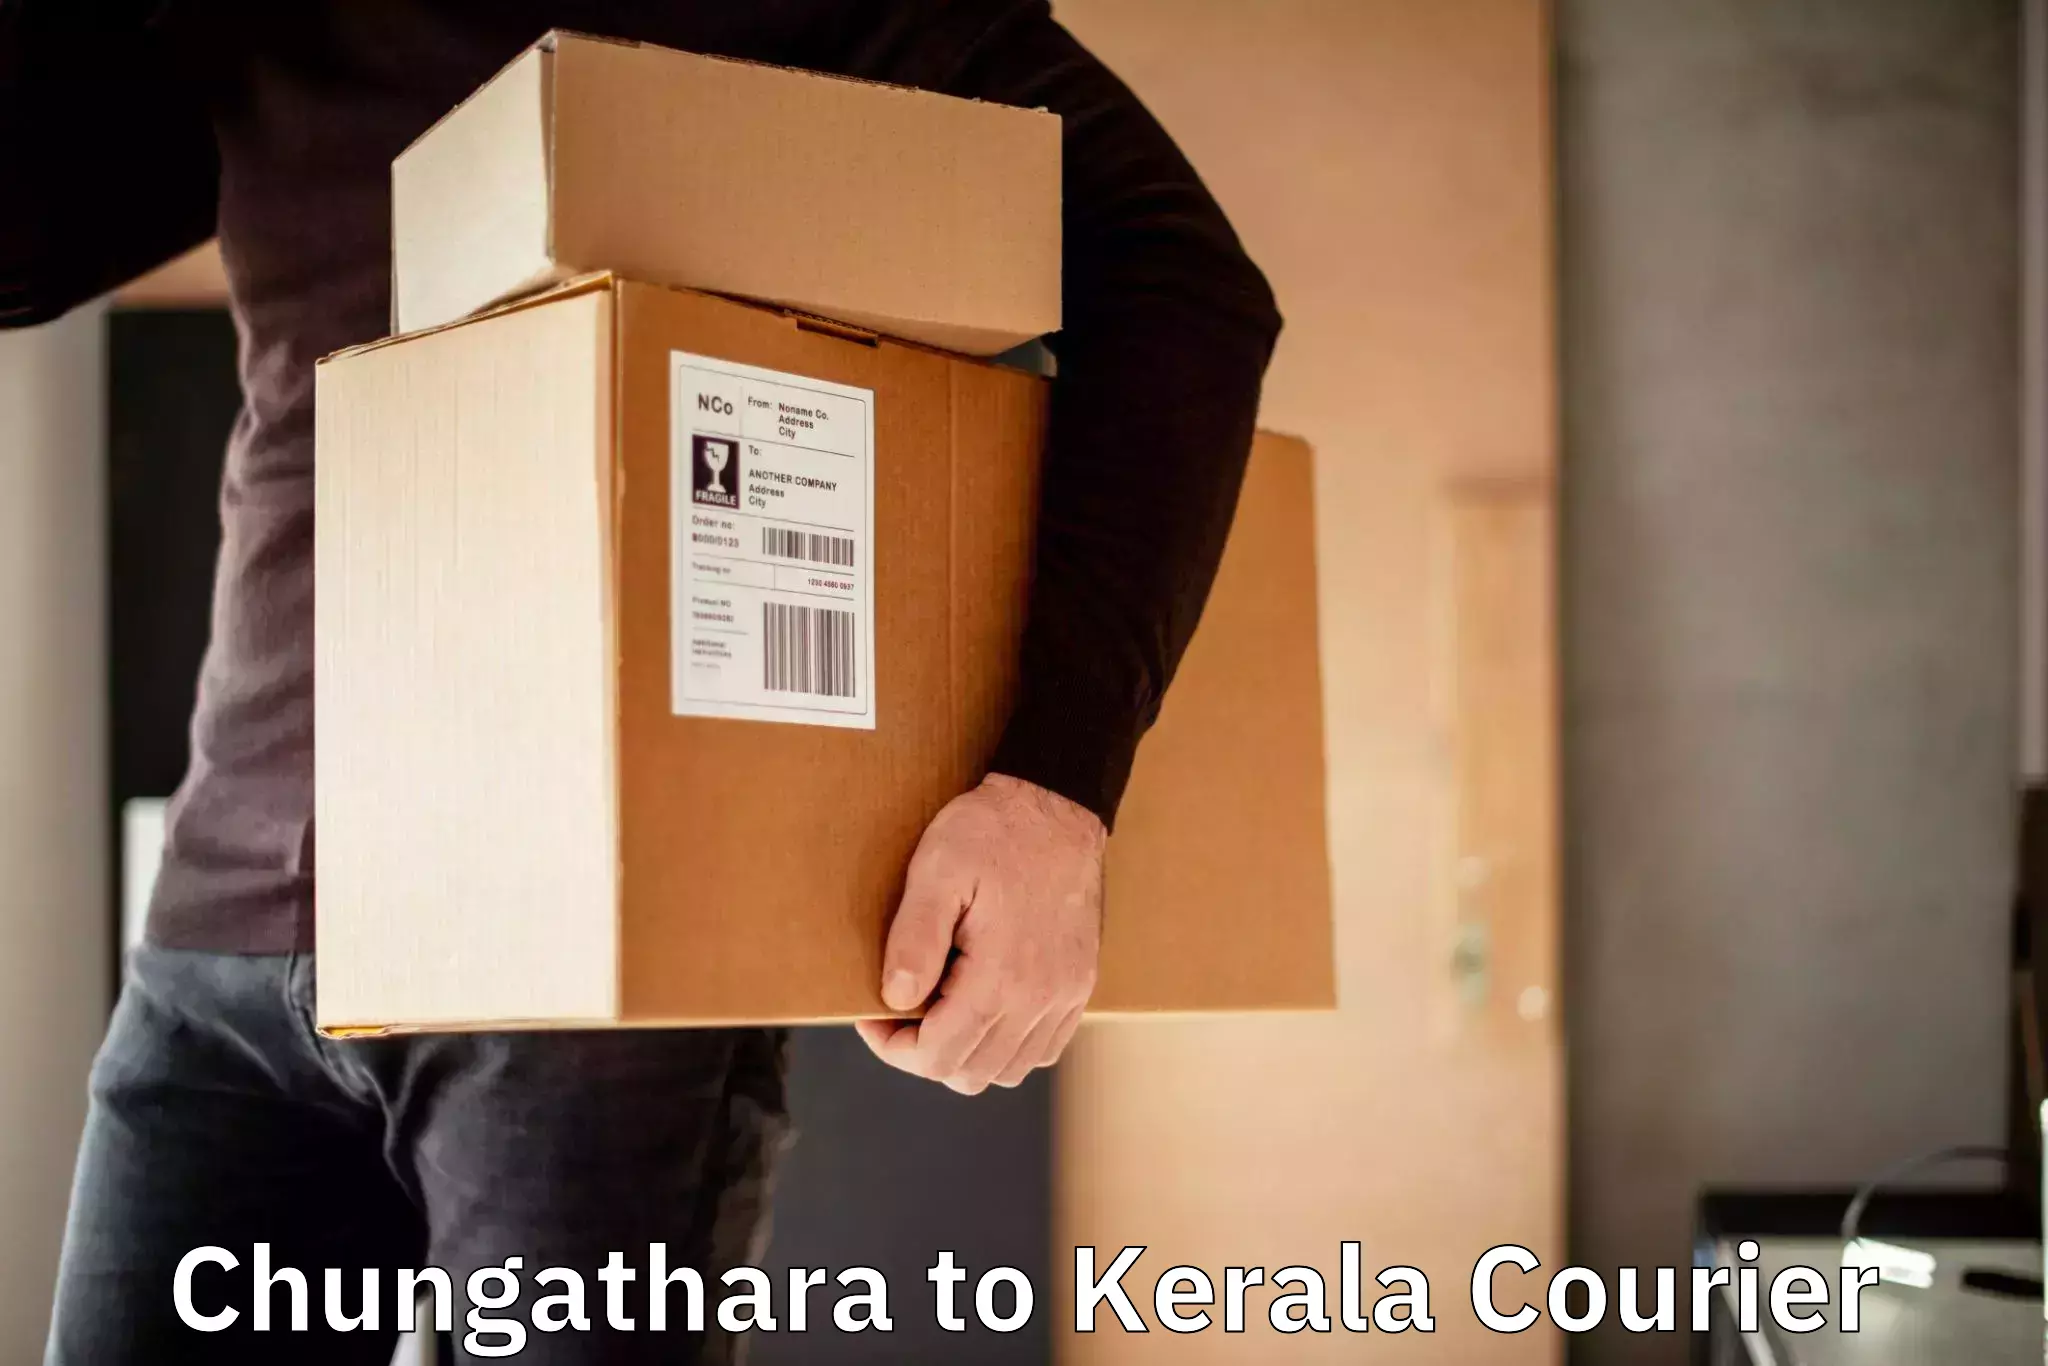 Business shipping needs Chungathara to Kiliyanthara